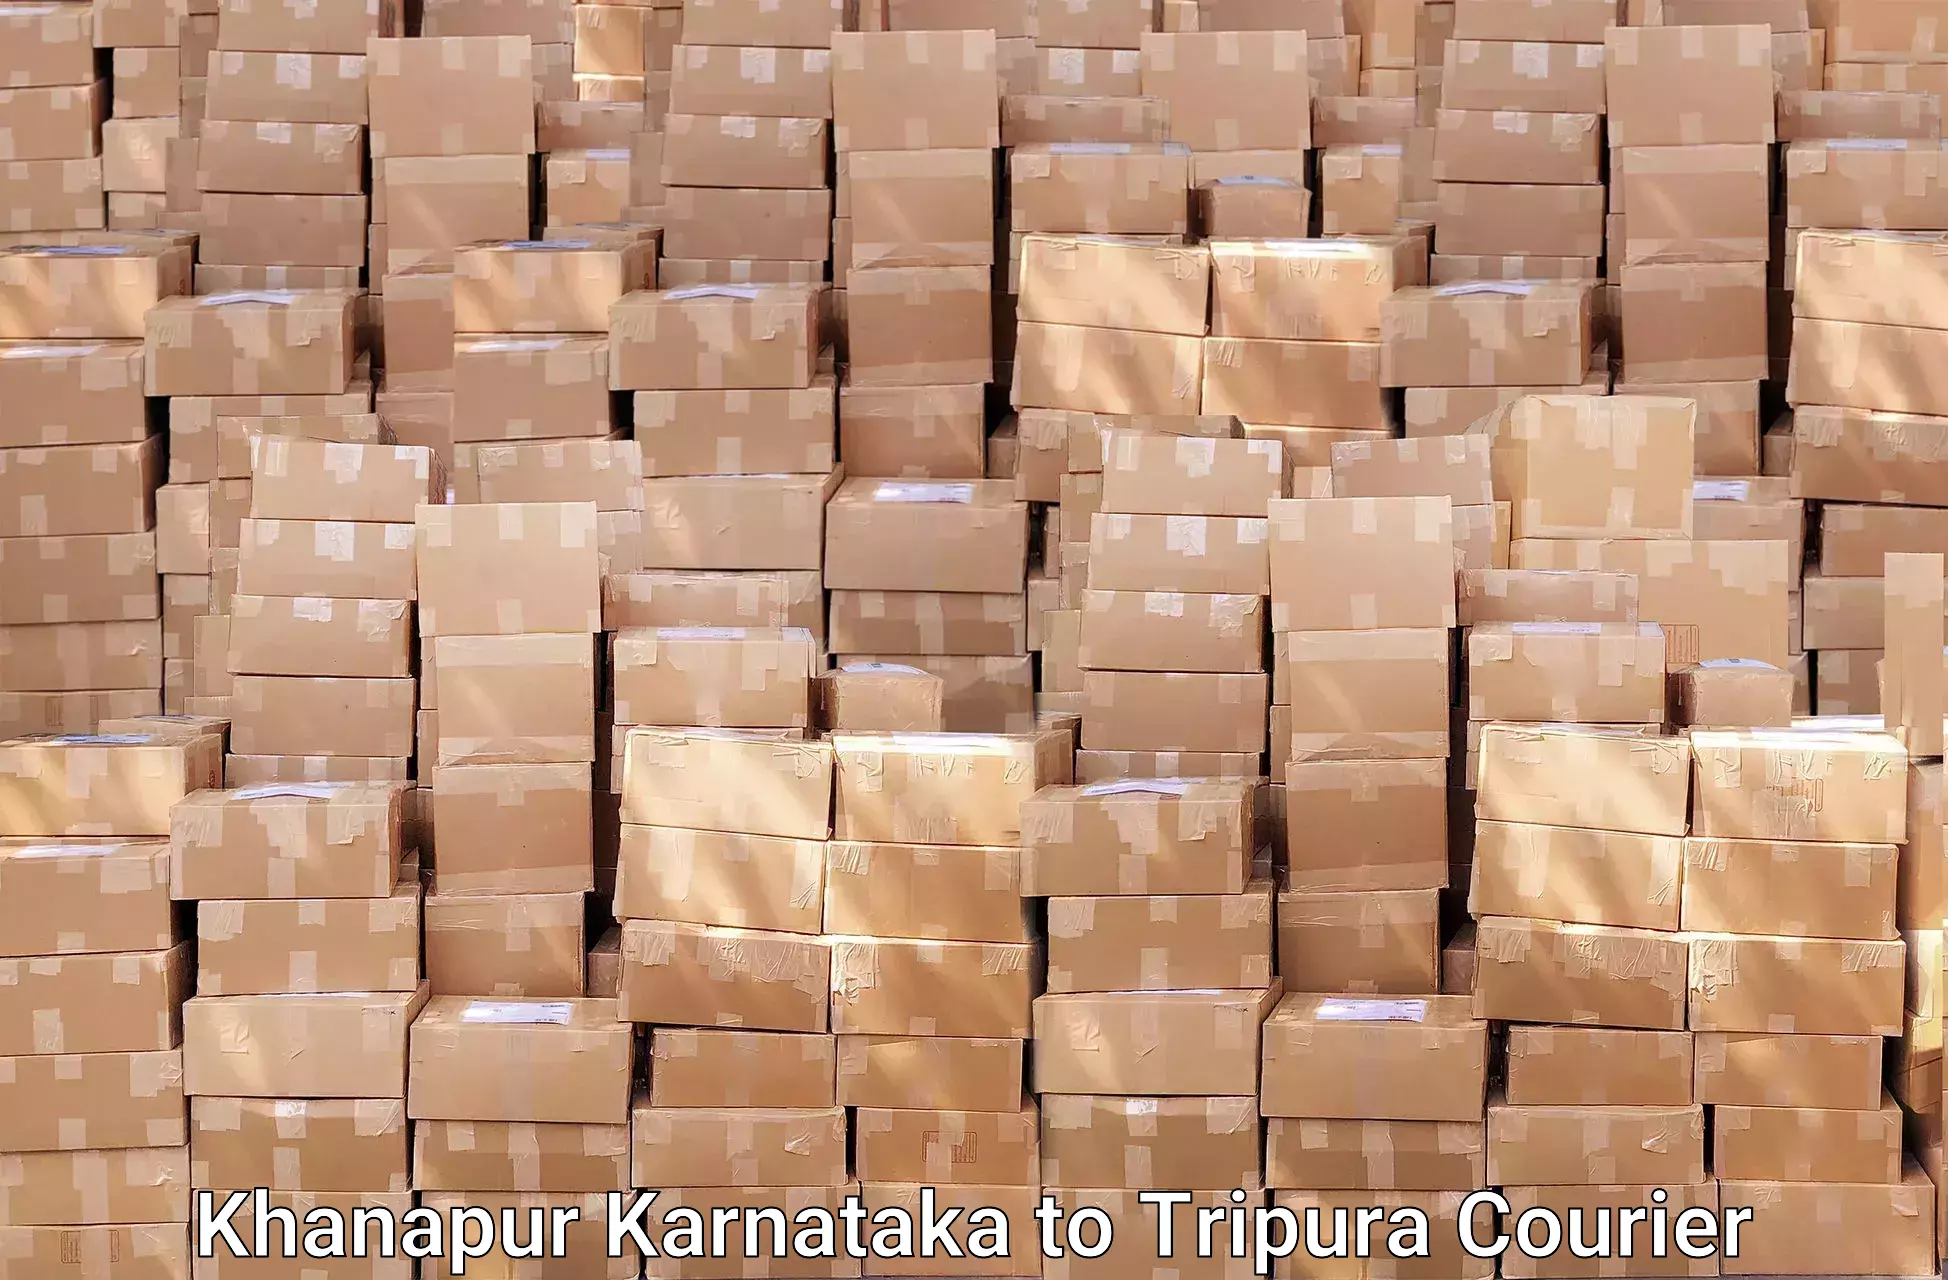 Furniture transport solutions Khanapur Karnataka to Kailashahar